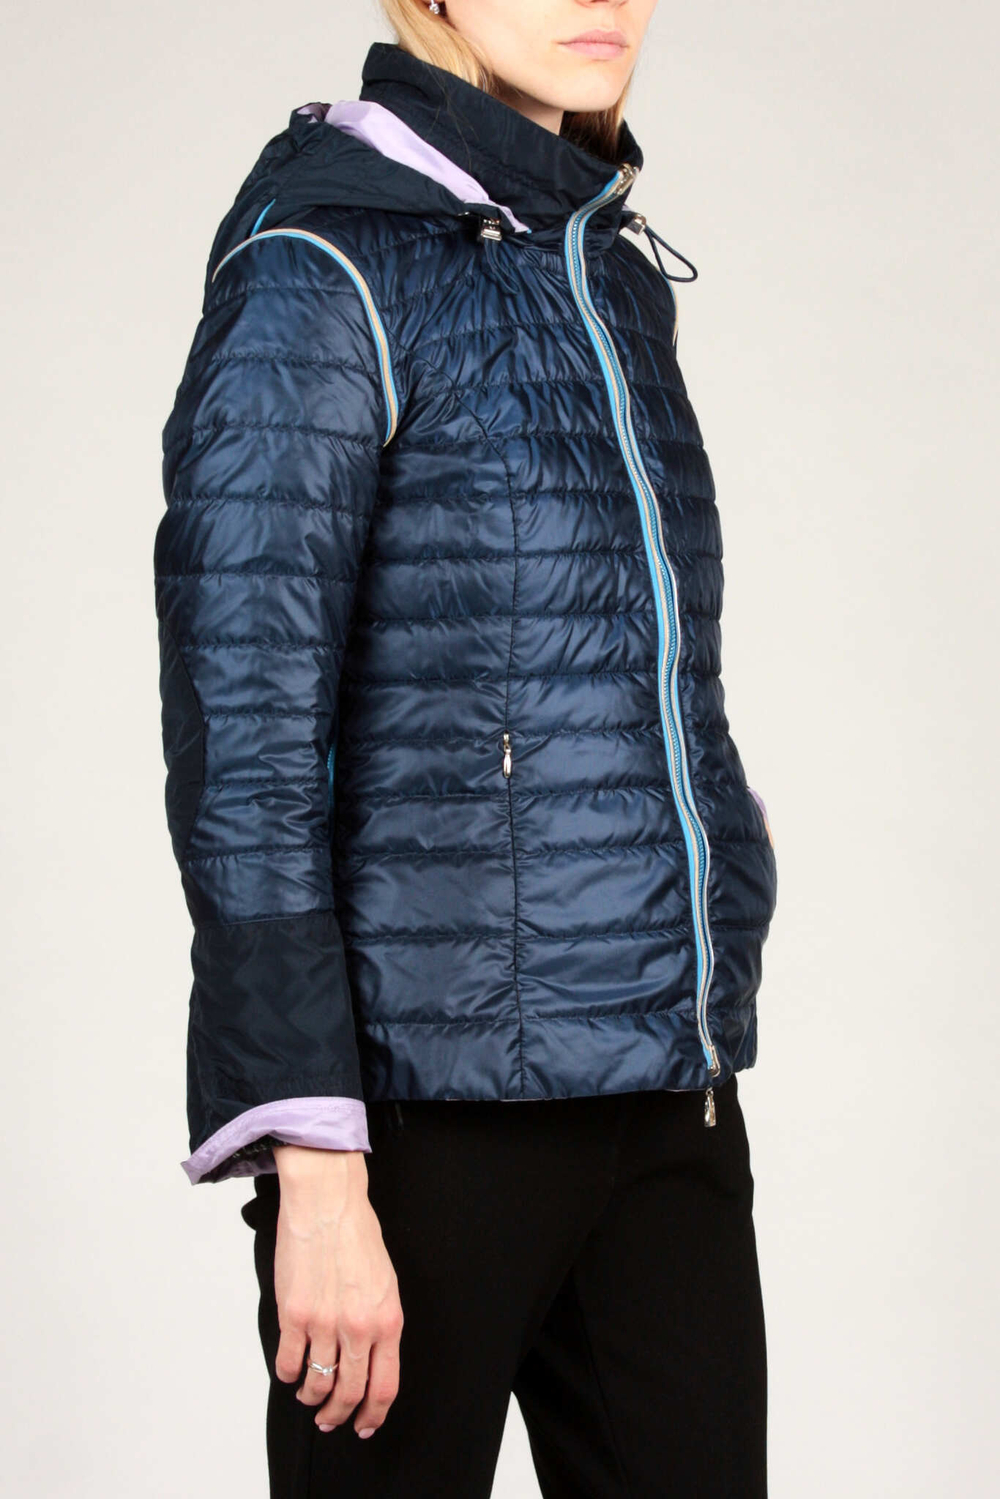 Куртка-жилет облегченная двухсторонняя DIEGO M 606 сиренево-синий